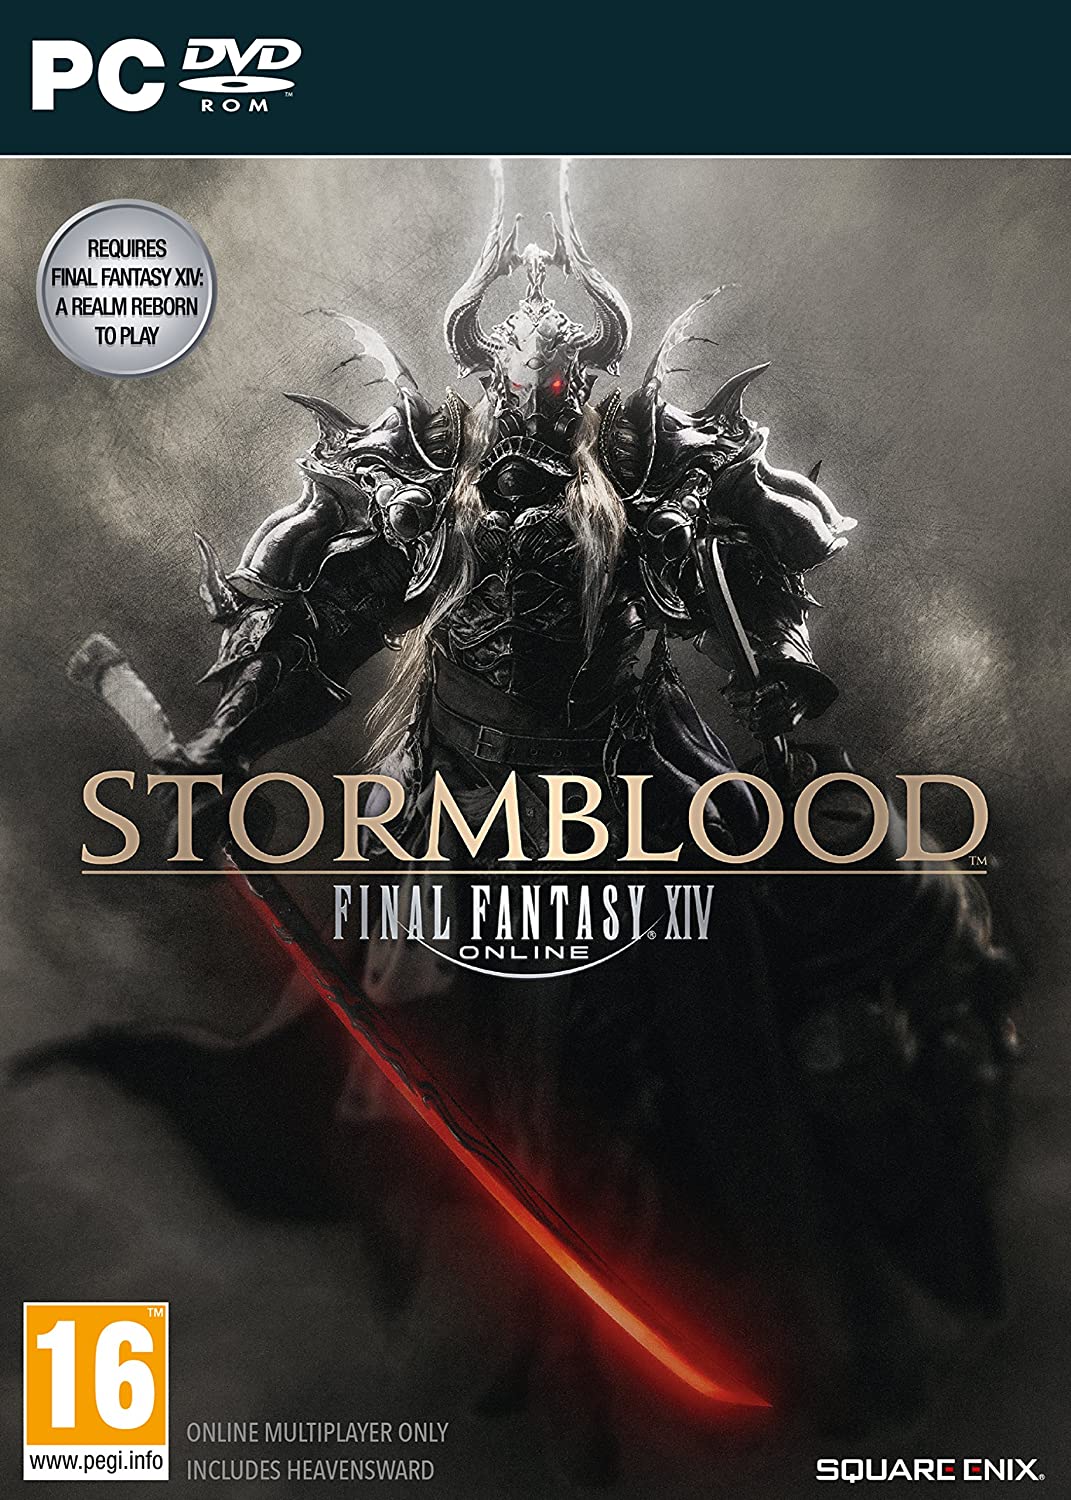 Final Fantasy XIV: Stormblood (PC DVD)